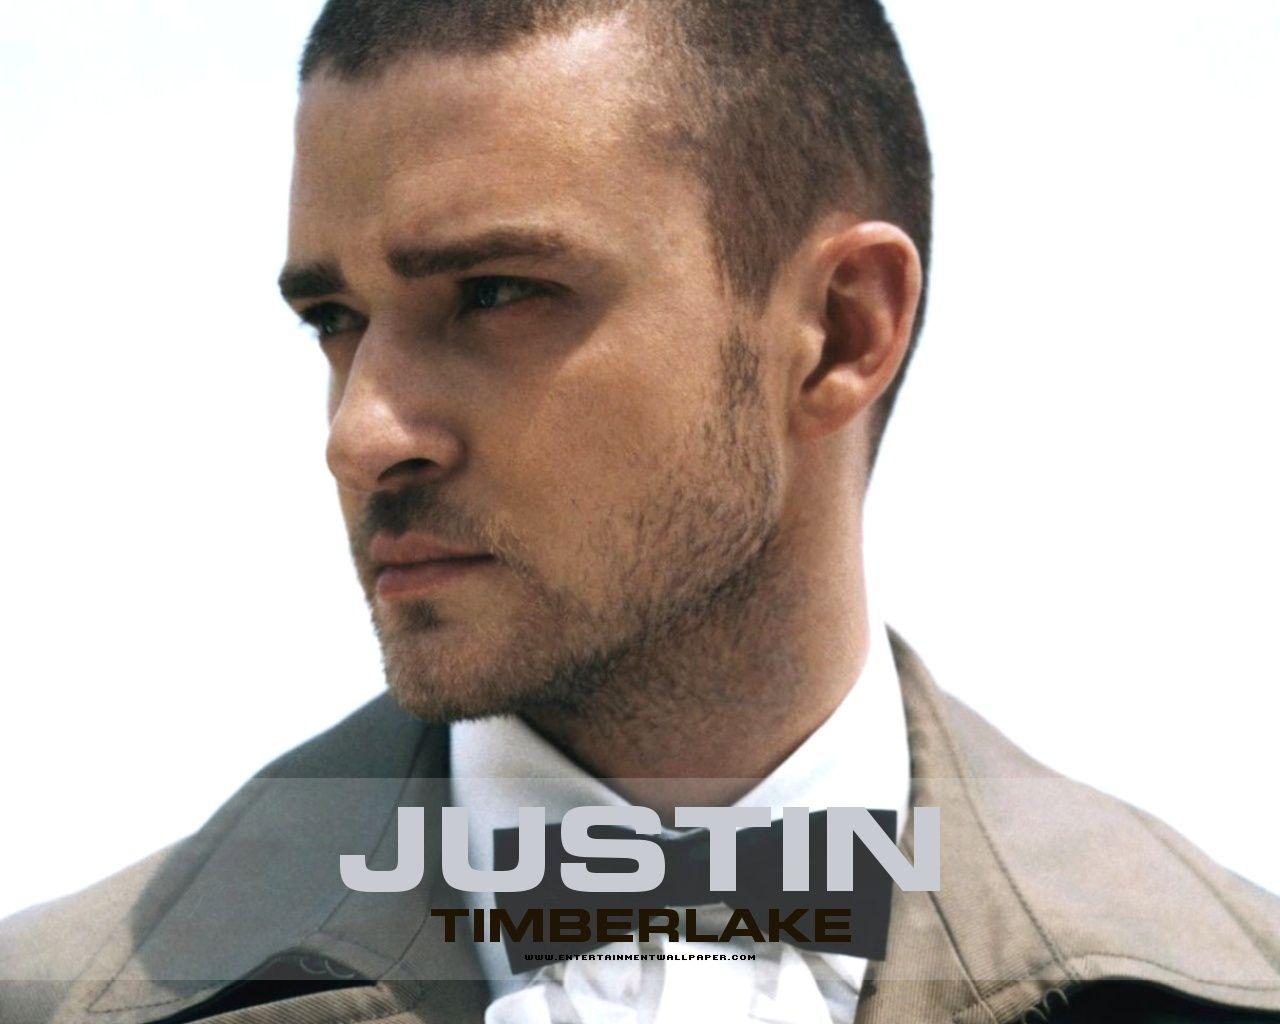 Justin Timberlake 84 117171 High Definition Wallpaper. wallalay